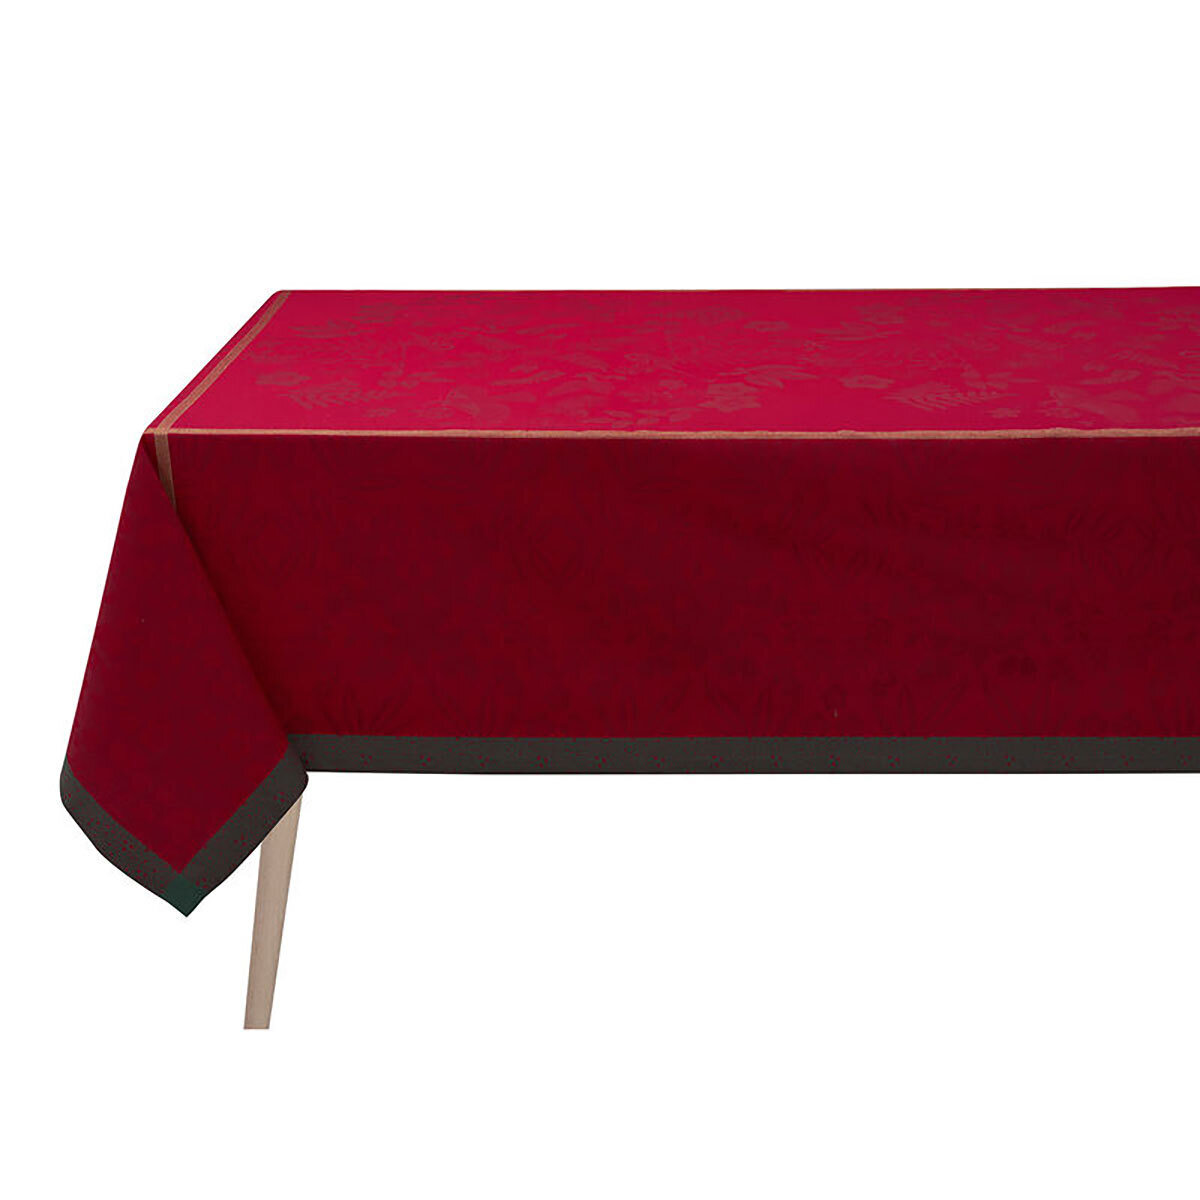 Le Jacquard Francais Tablecloth Poesie Hiver Red 99% Cotton 1% Lurex 47 x 47 Inch 27722 Set of 4